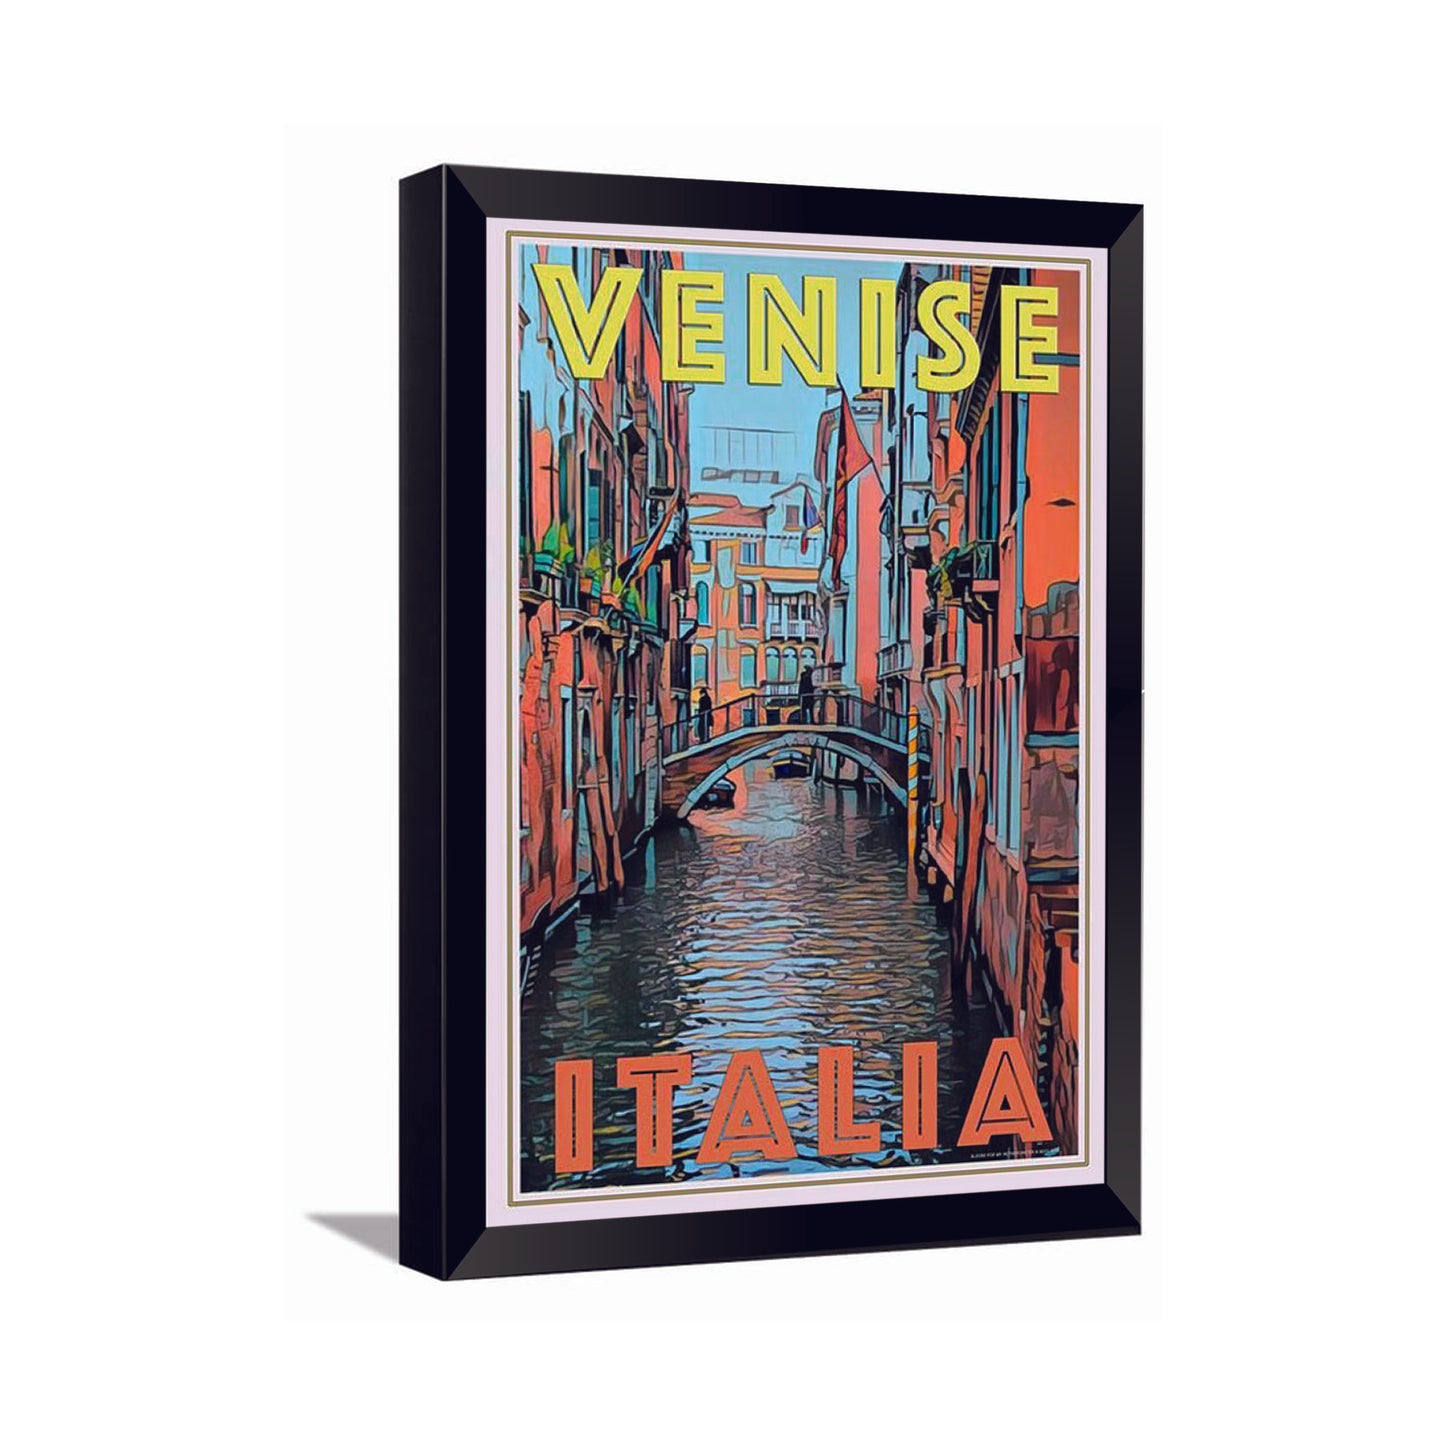 Venise Italia---